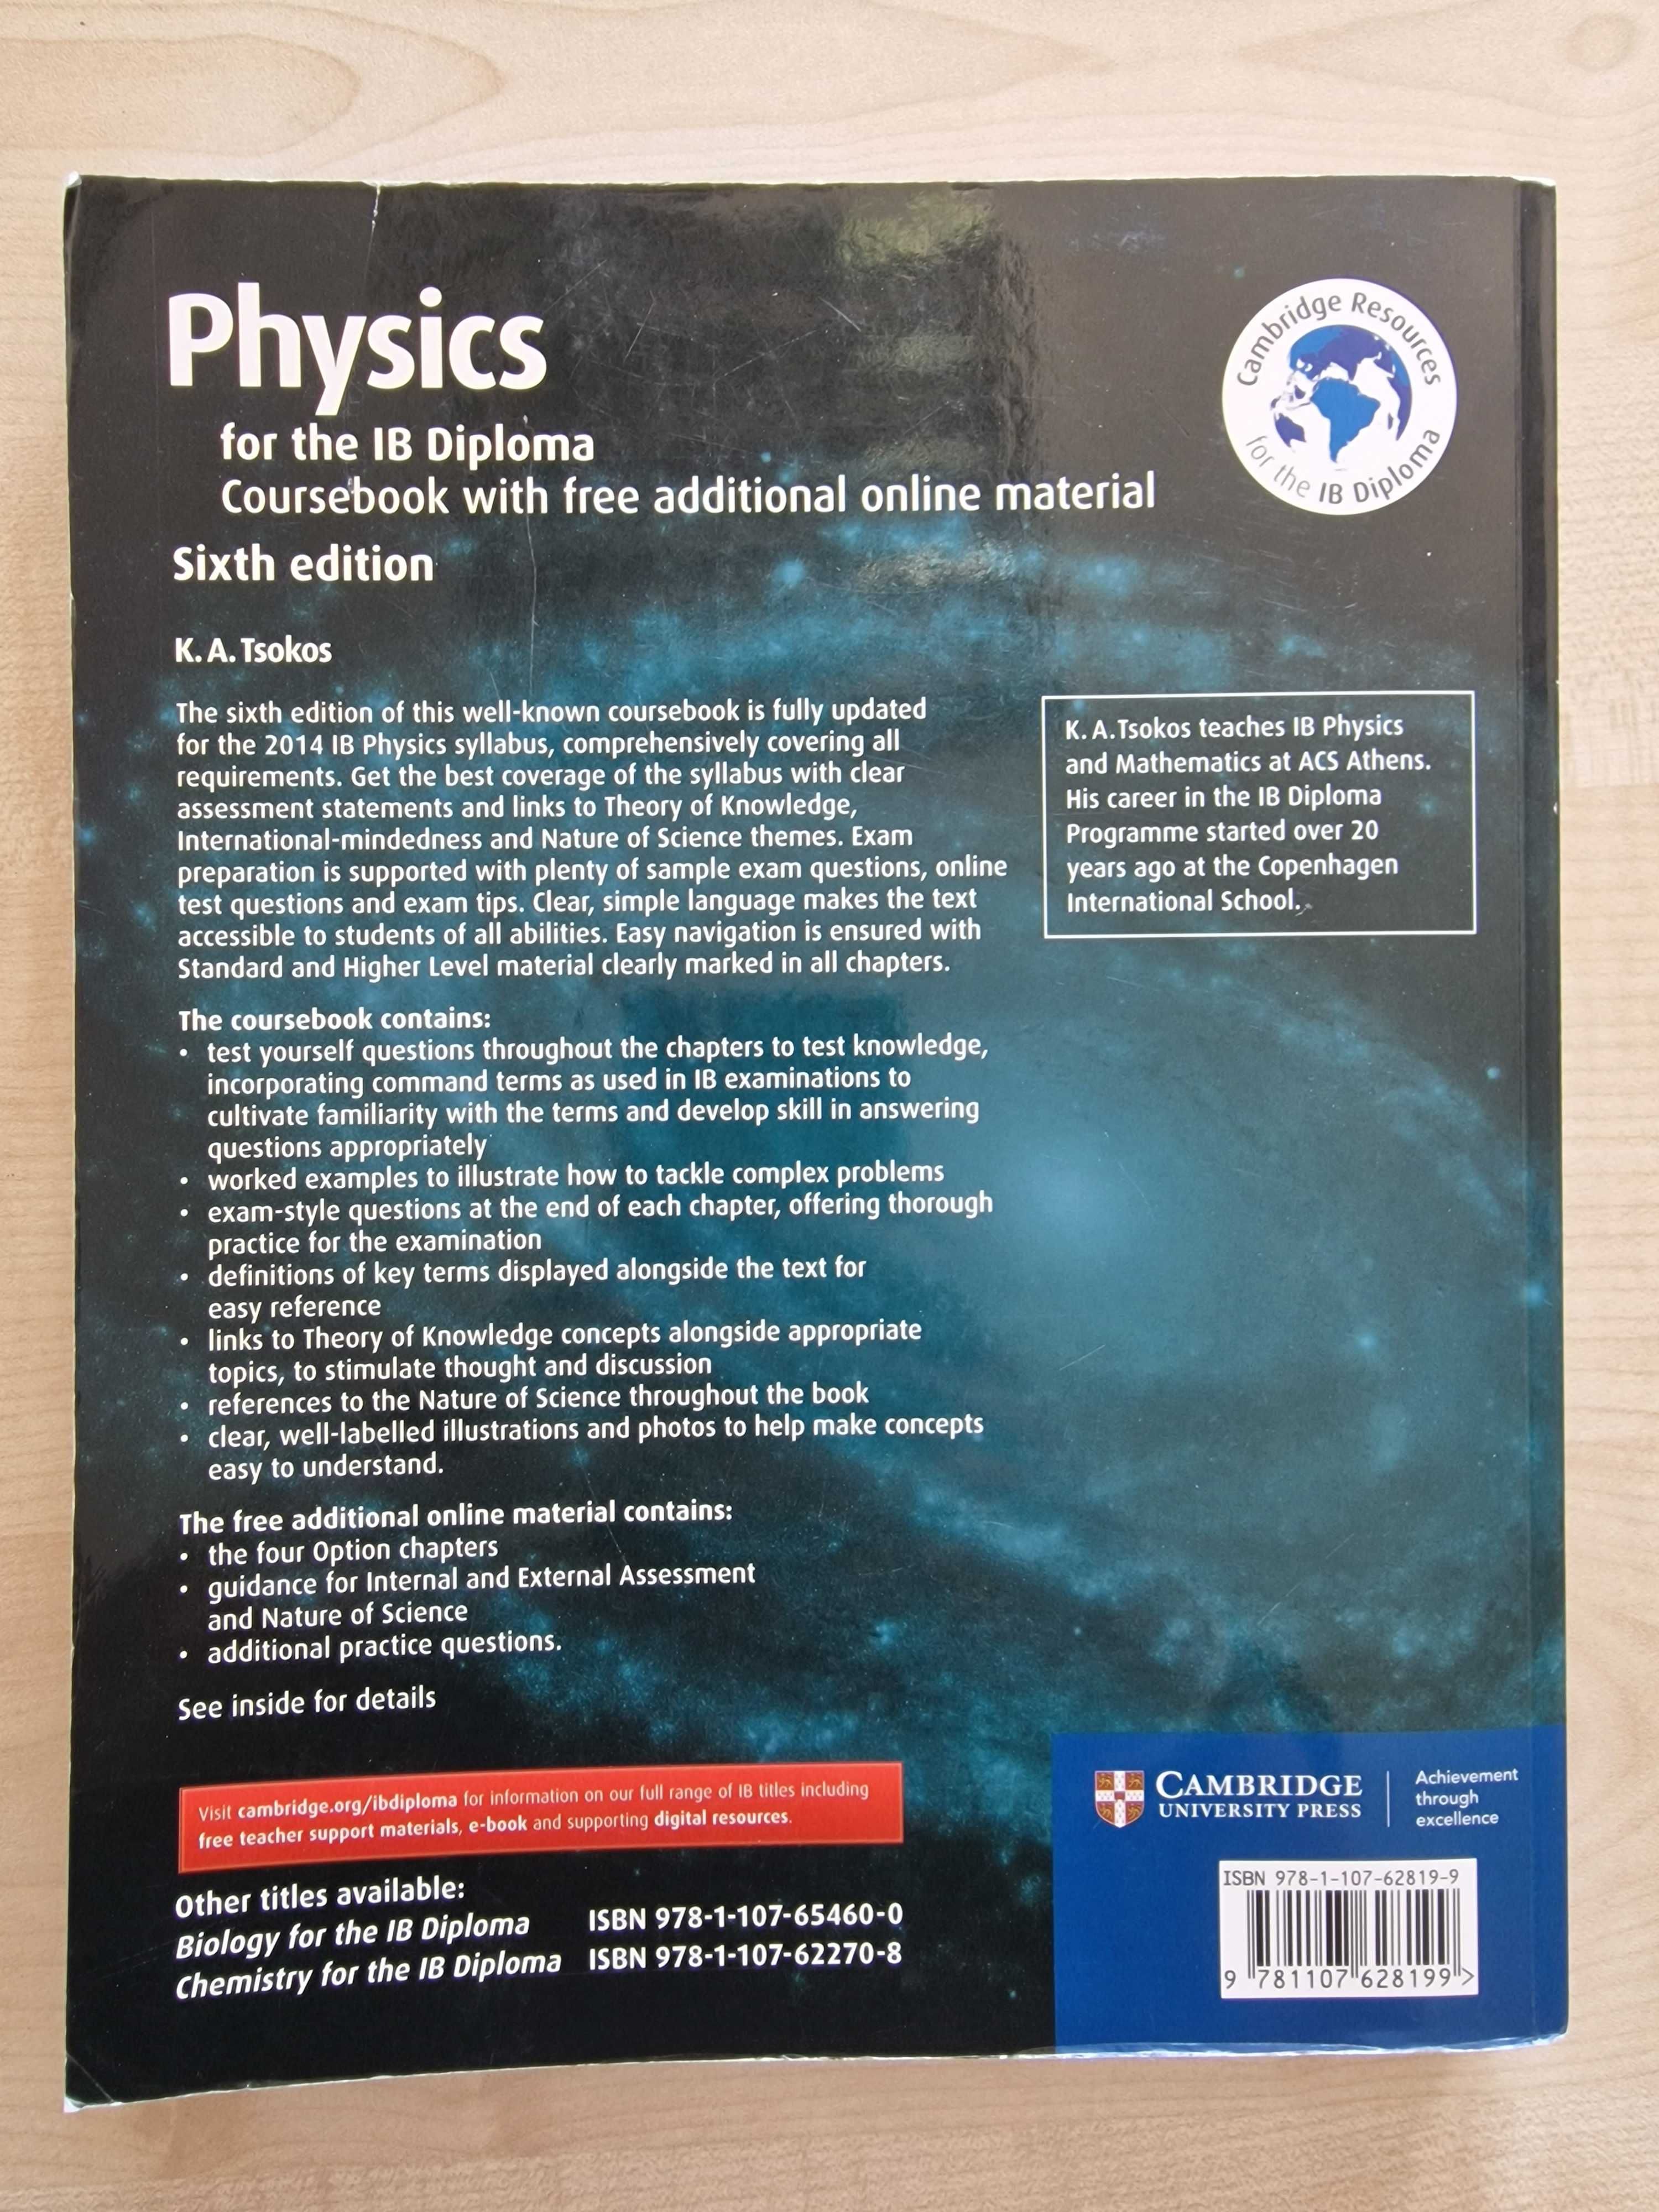 Physics for the IB Diploma Sixth Edition, Tsokos, Cambridge University